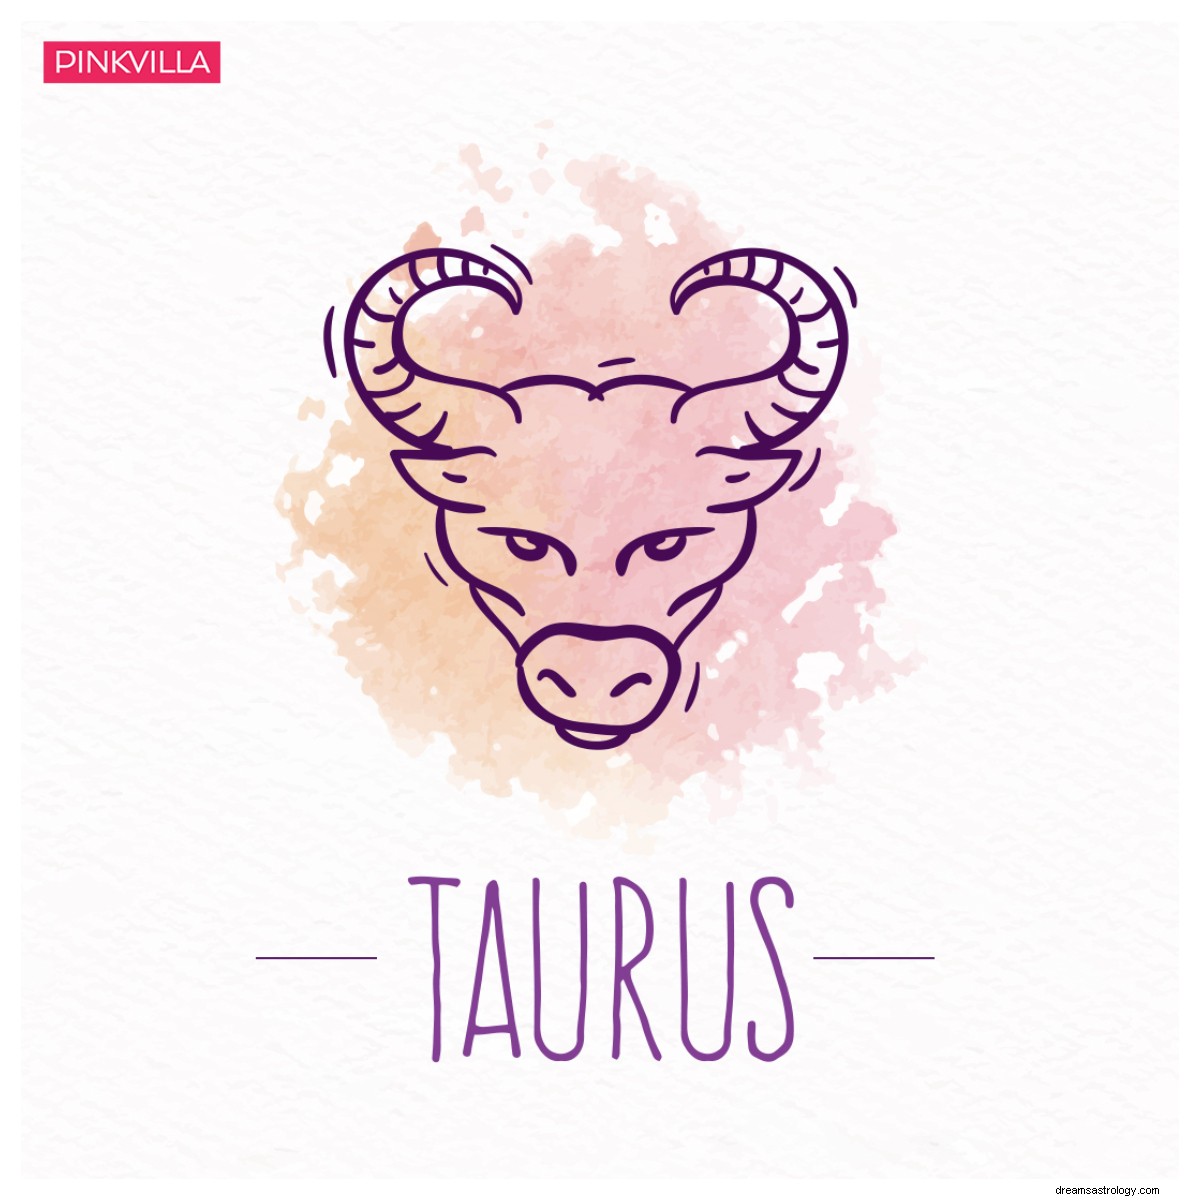 Gemini to Sagitarius:5 Zodiak yang paling sulit dihadapi saat jatuh cinta 